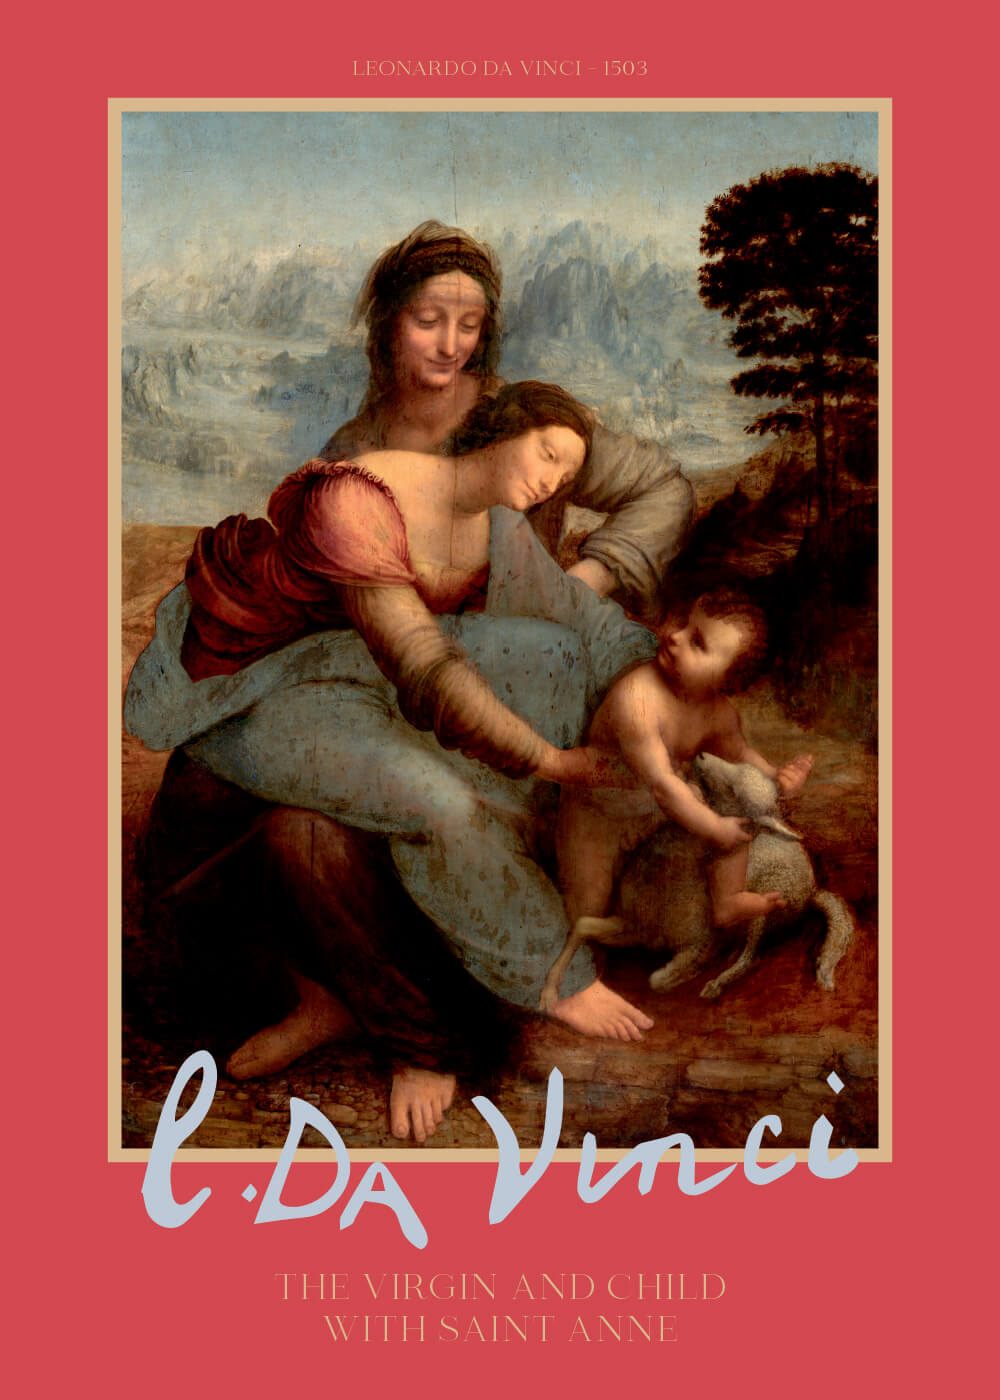 Billede af The virgin and child with Saint Anne - Leonardo da Vinci kunstplakat